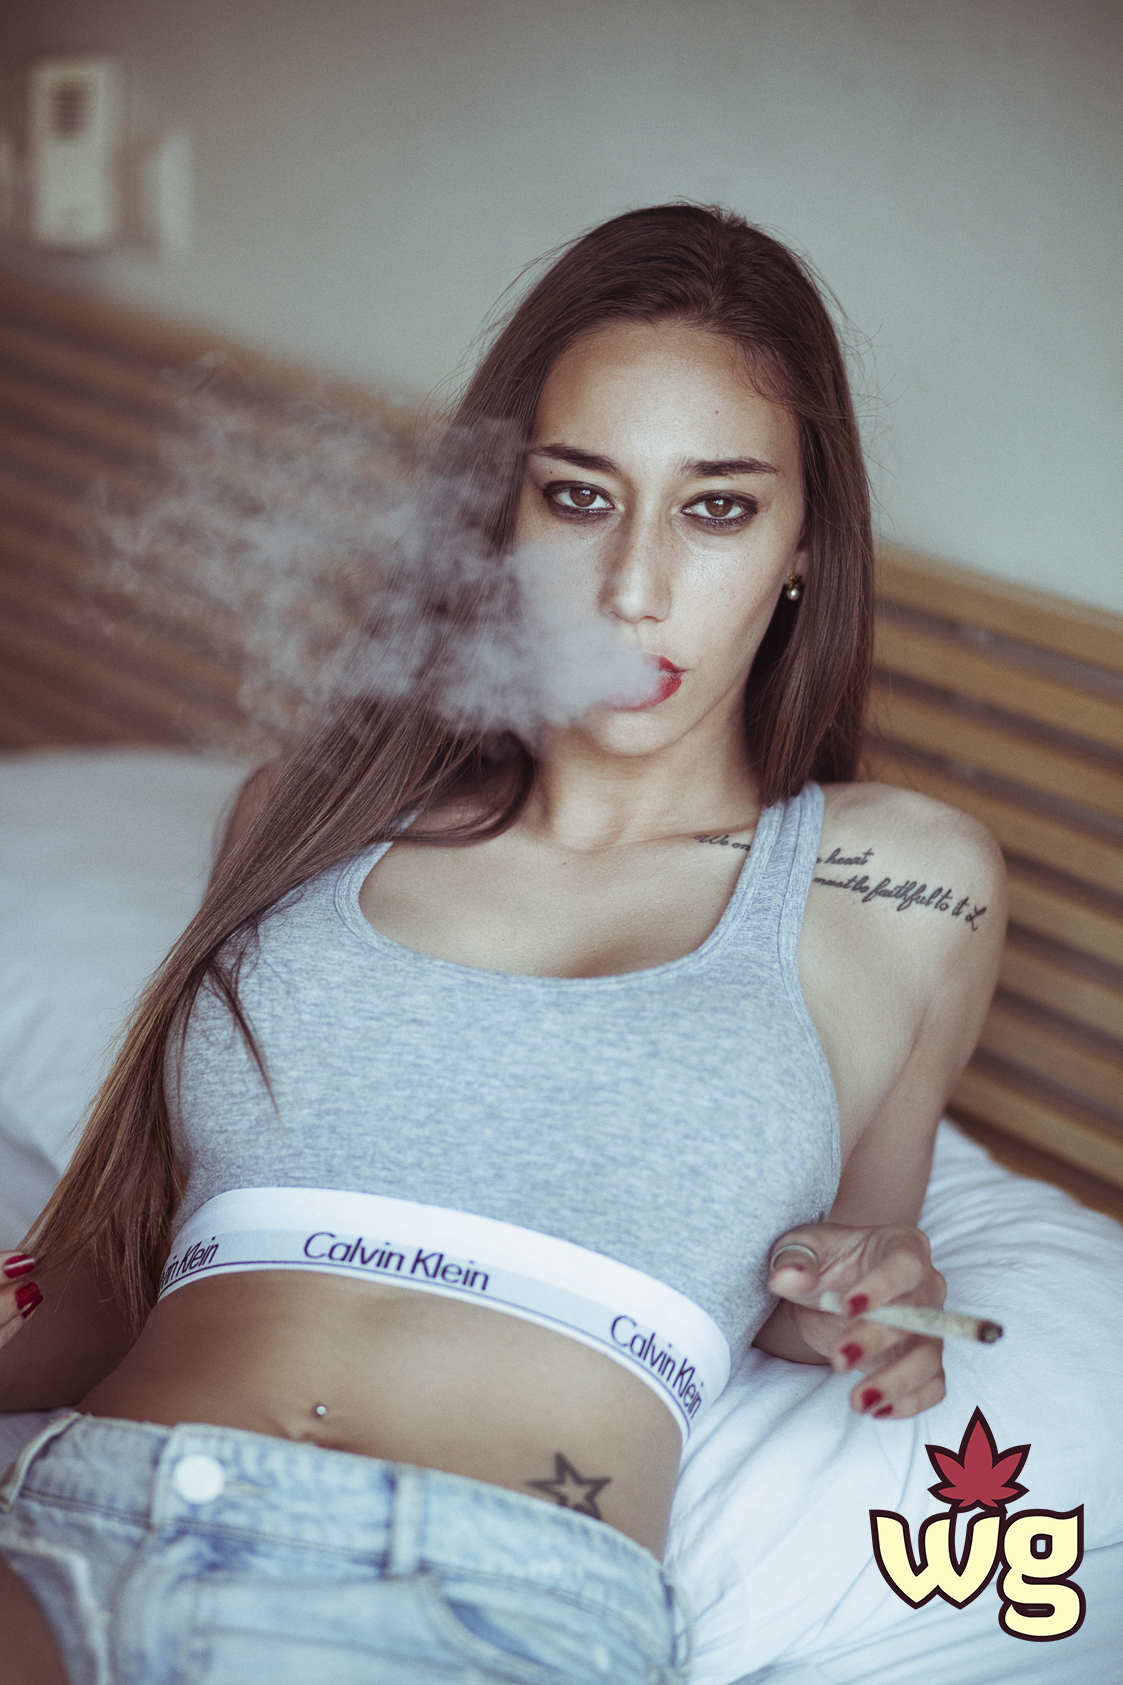 https://www.weedgirls.com/wp-content/uploads/2019/01/hot-girl-sport-top-smoking-weed.jpg